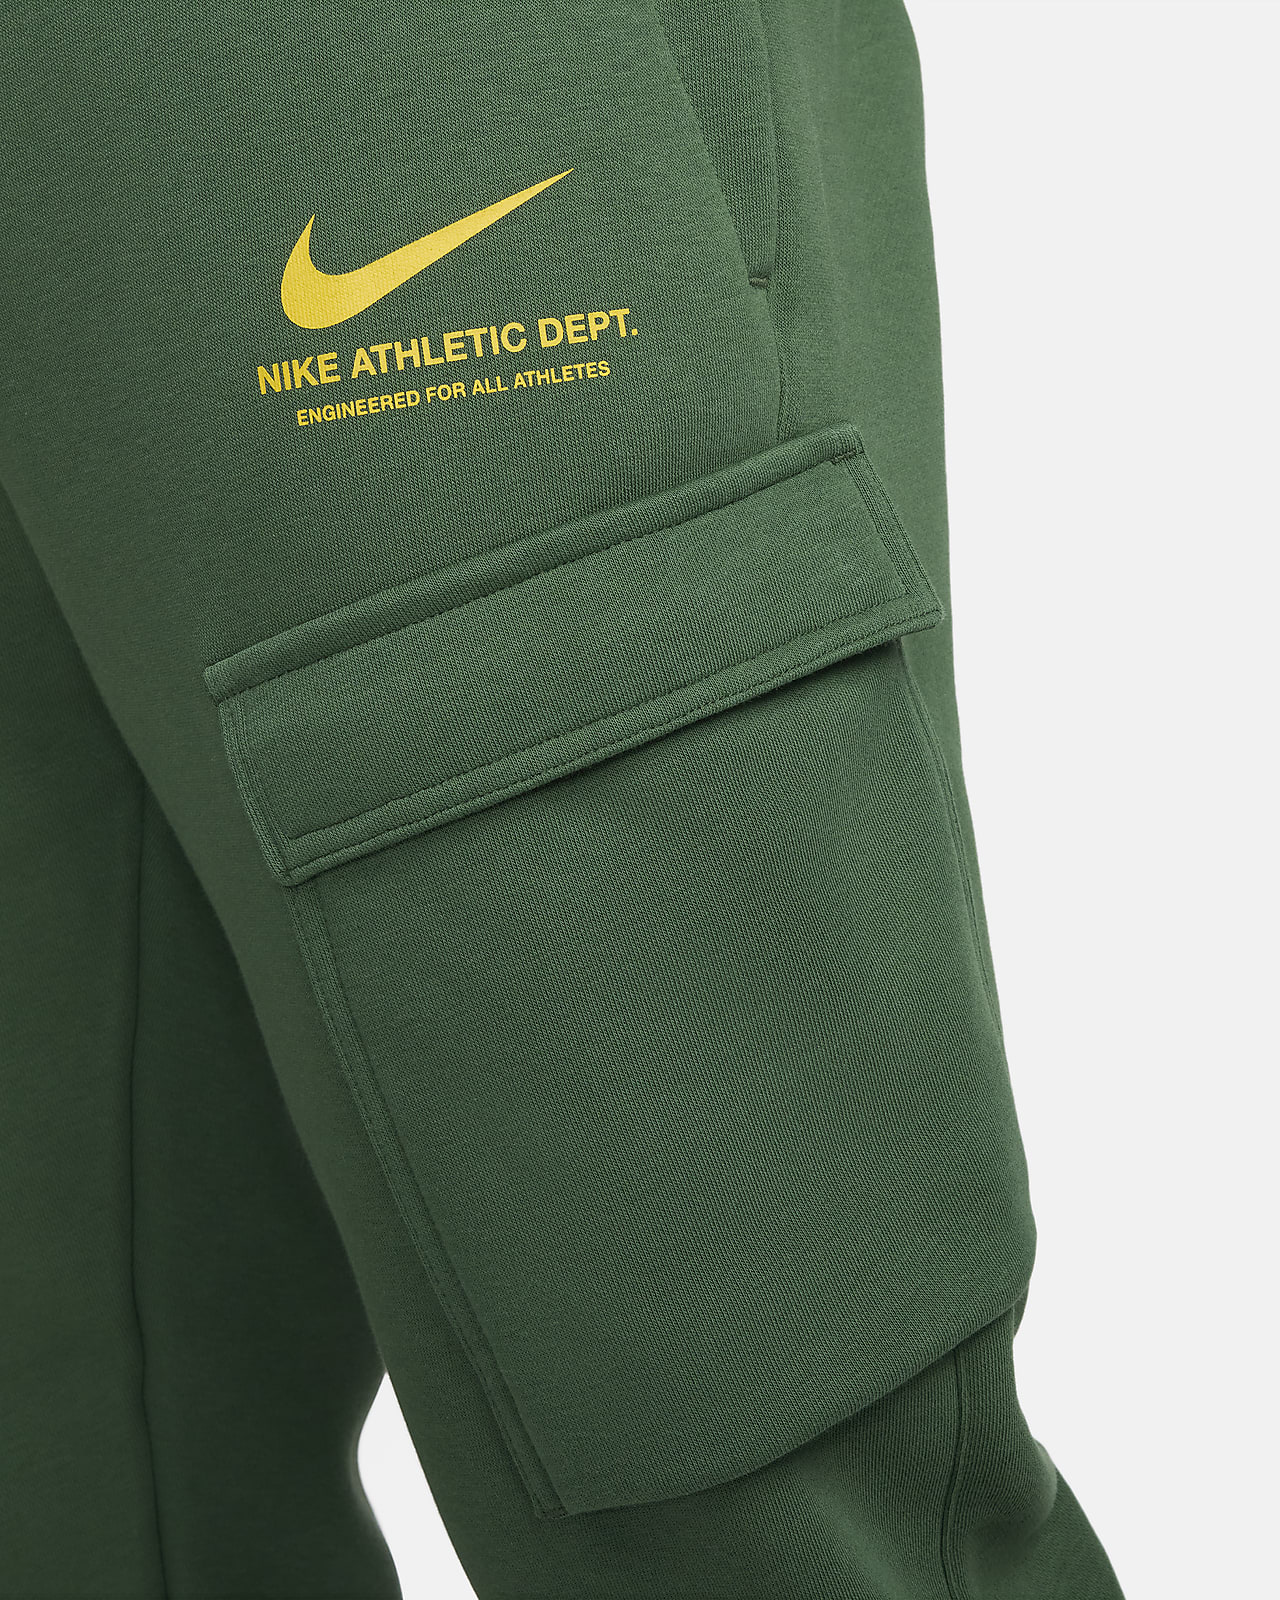 Cargo Nike Parachute Pants 🪂, Measurements , Waist